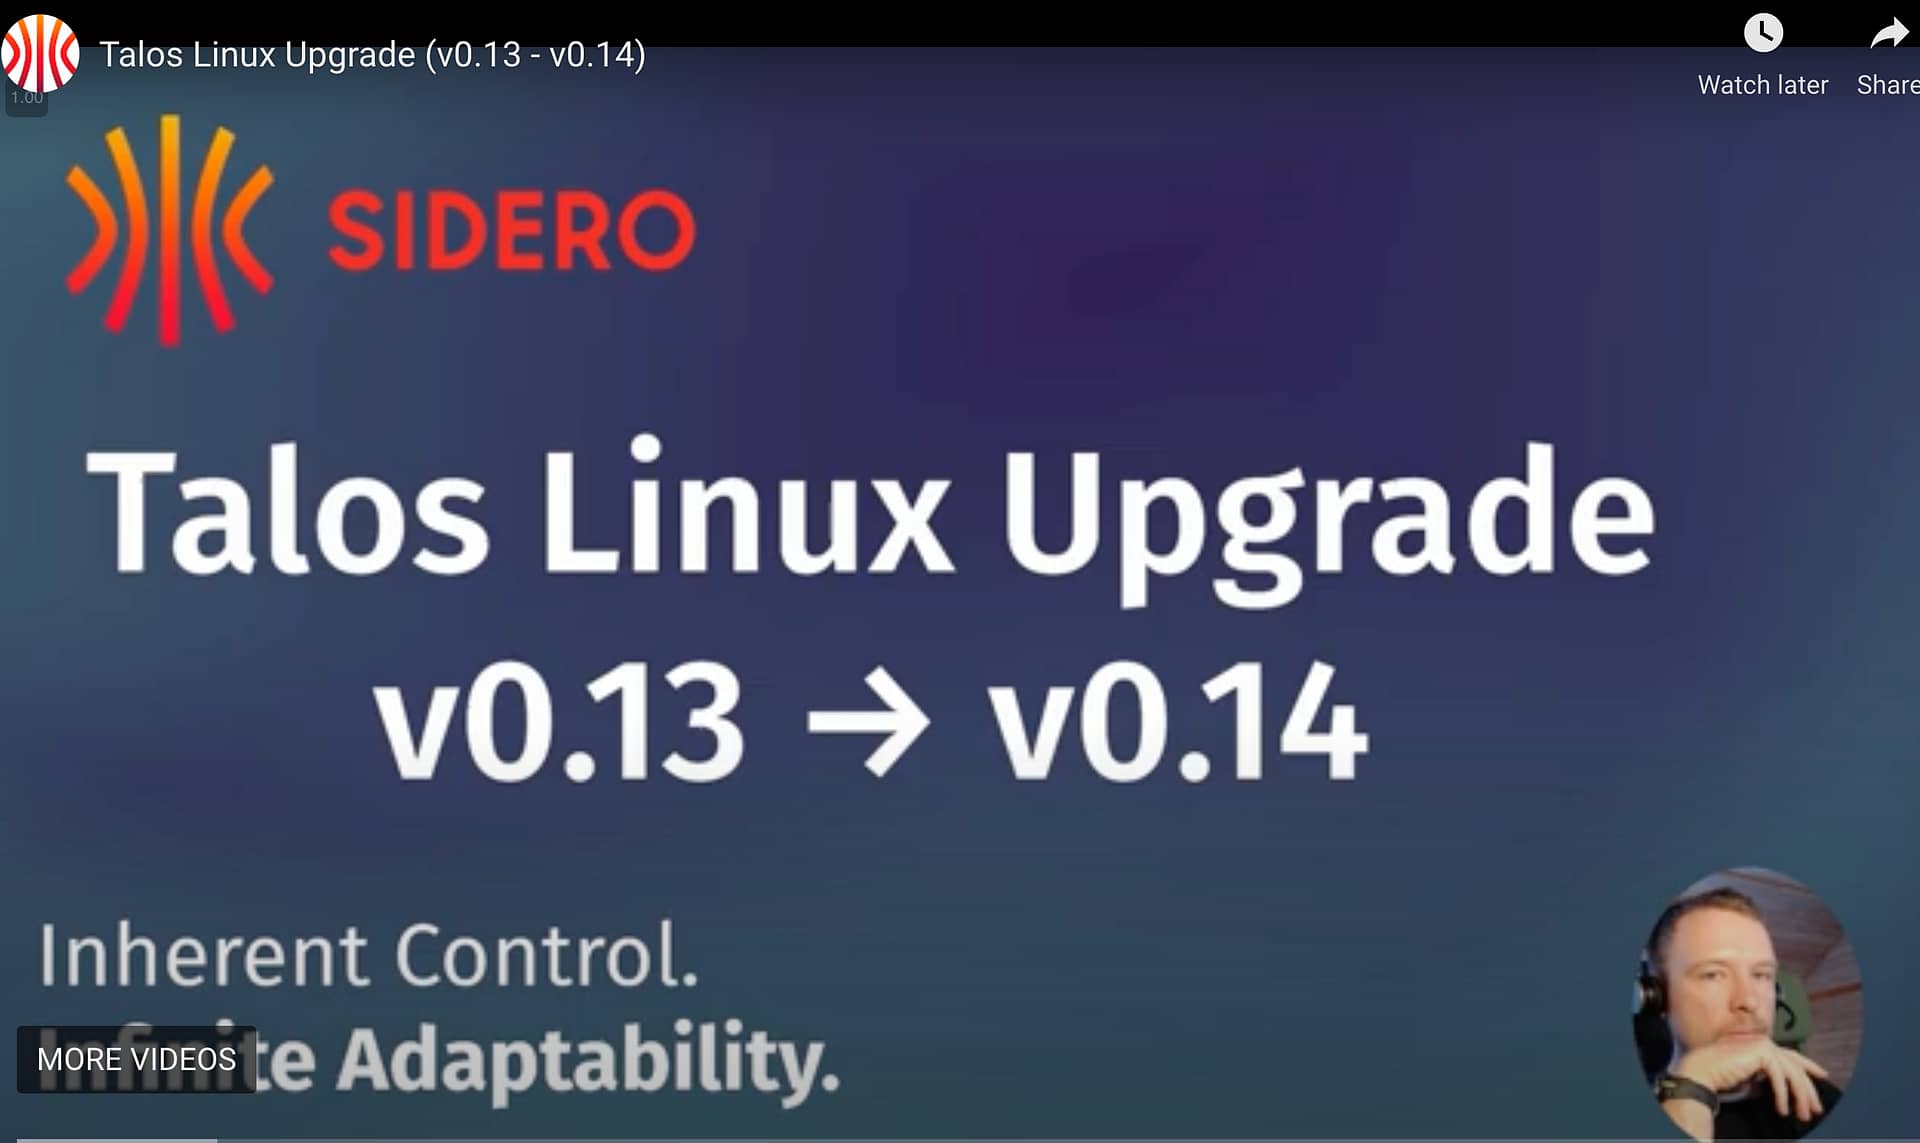 Talos Linux Upgrade (v0.13 - v0.14)